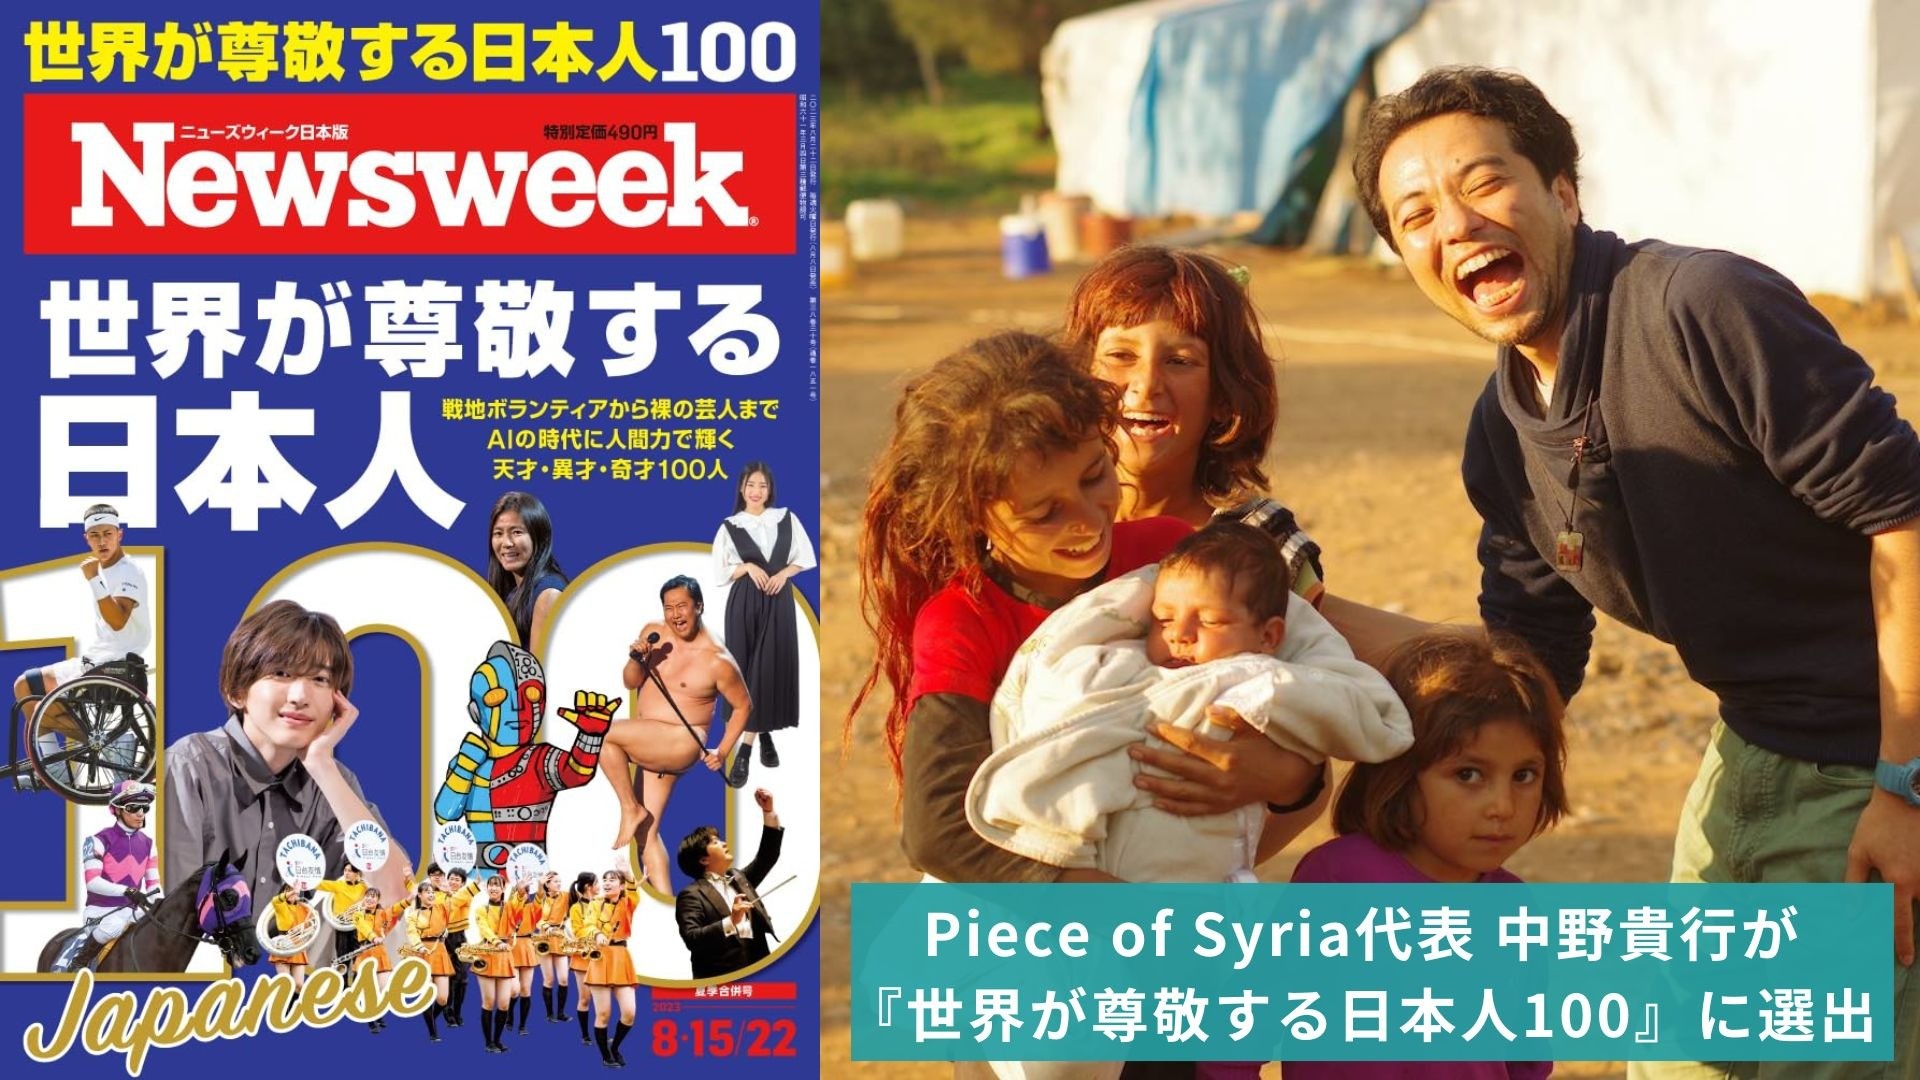 【ご報告】「世界が尊敬する日本人」にPiece of Syria代表・中野貴行が選ばれました